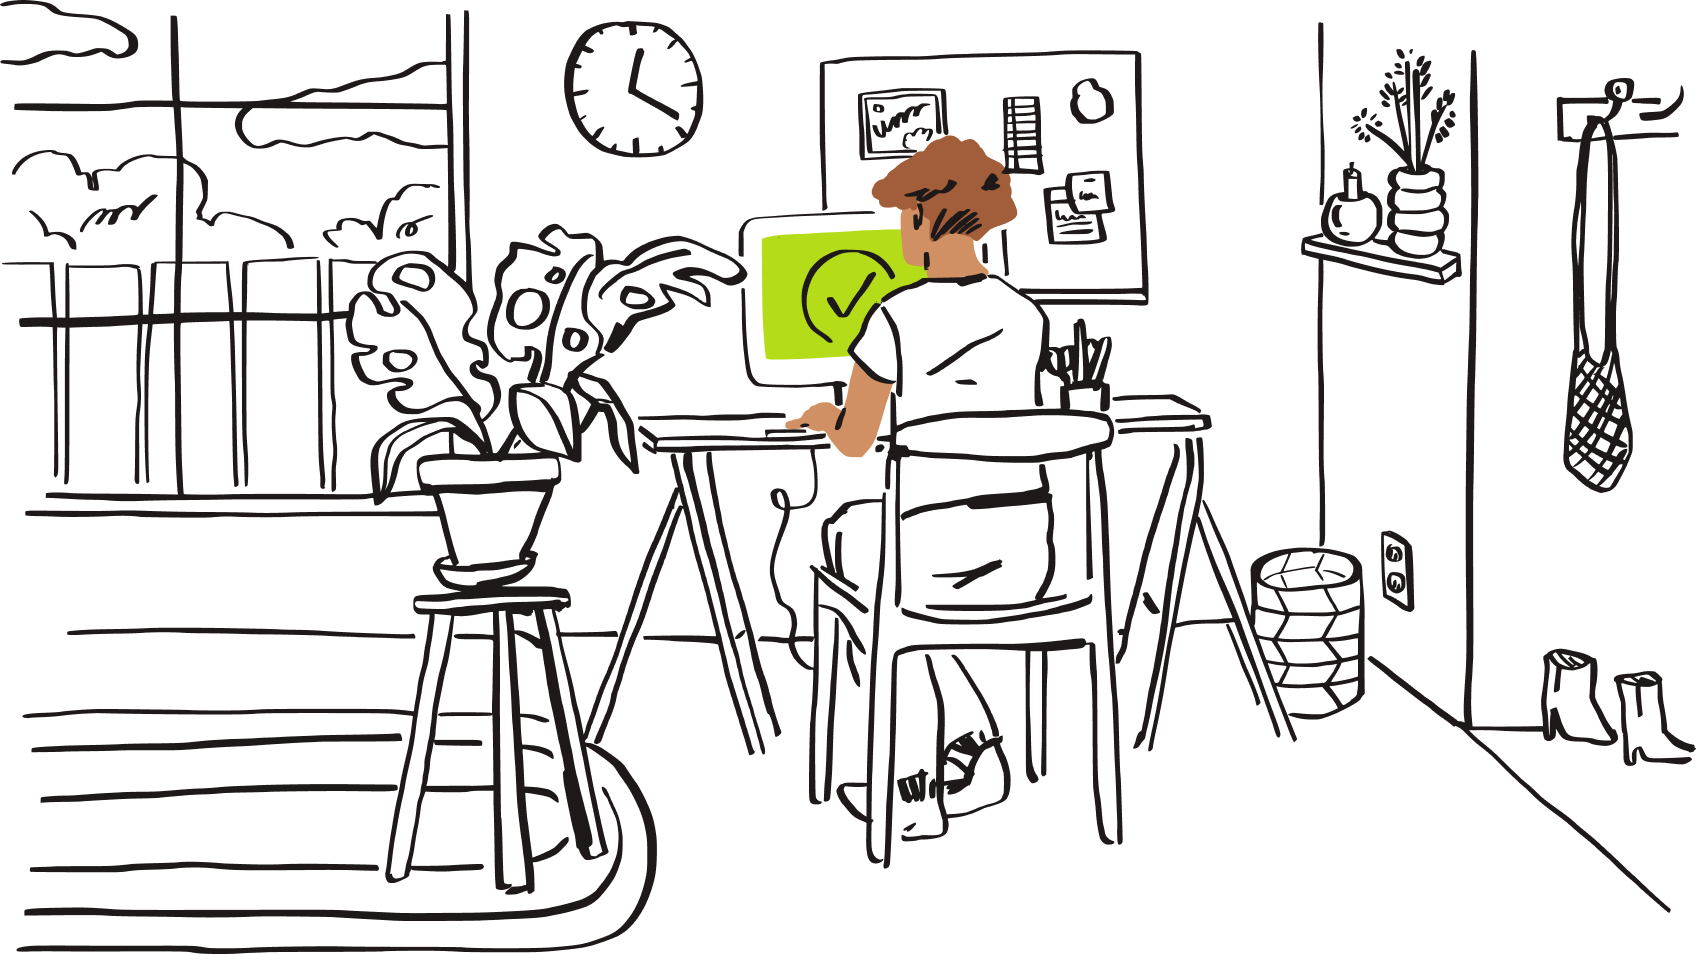 Иллюстрация: человек сидит за компьютером, на экране которого изображена зеленая галочка.